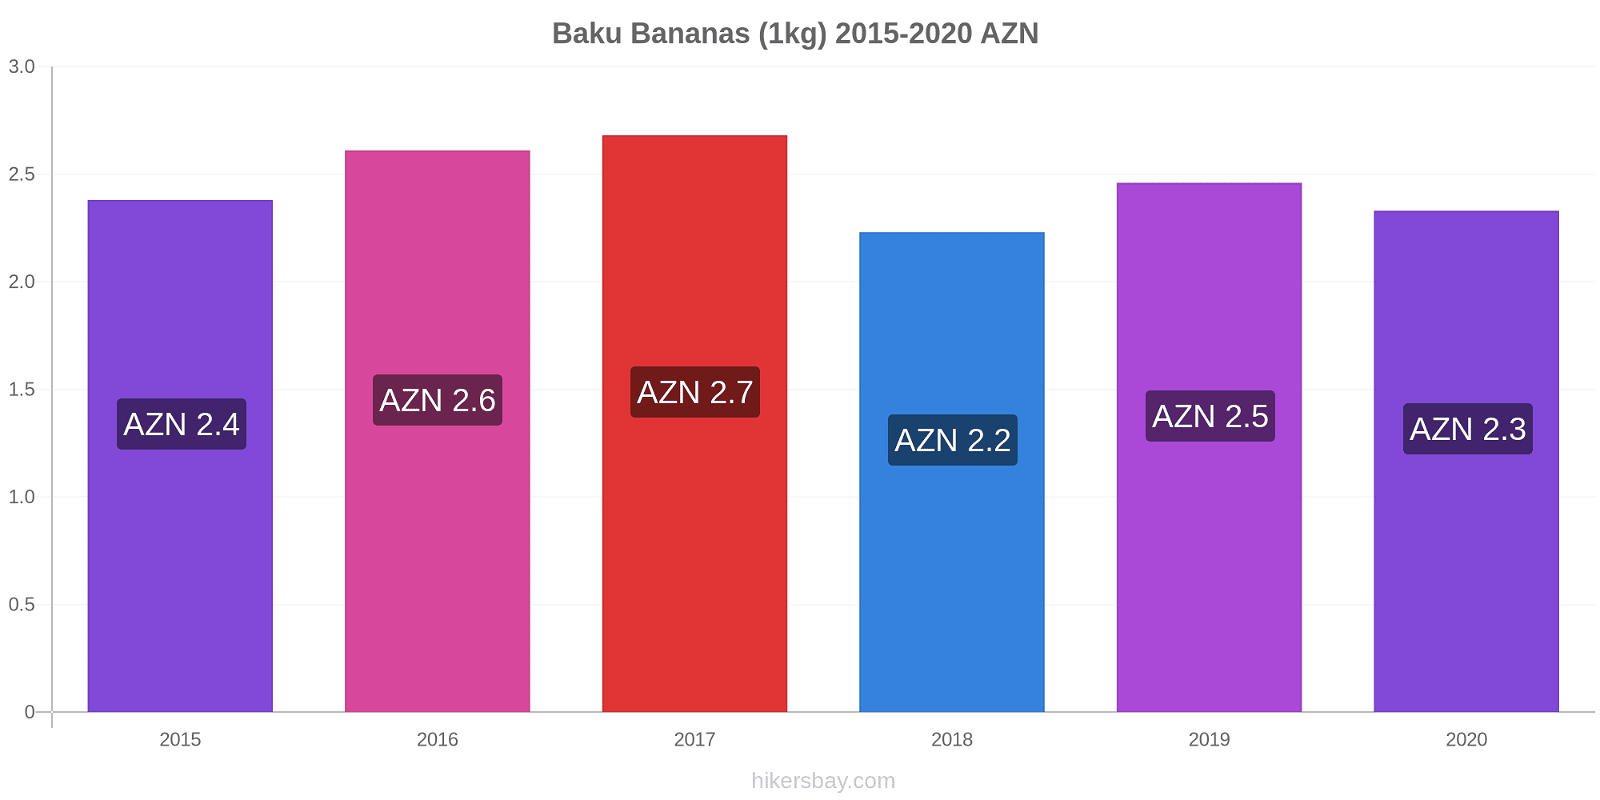 Baku variação de preço Banana (1kg) hikersbay.com